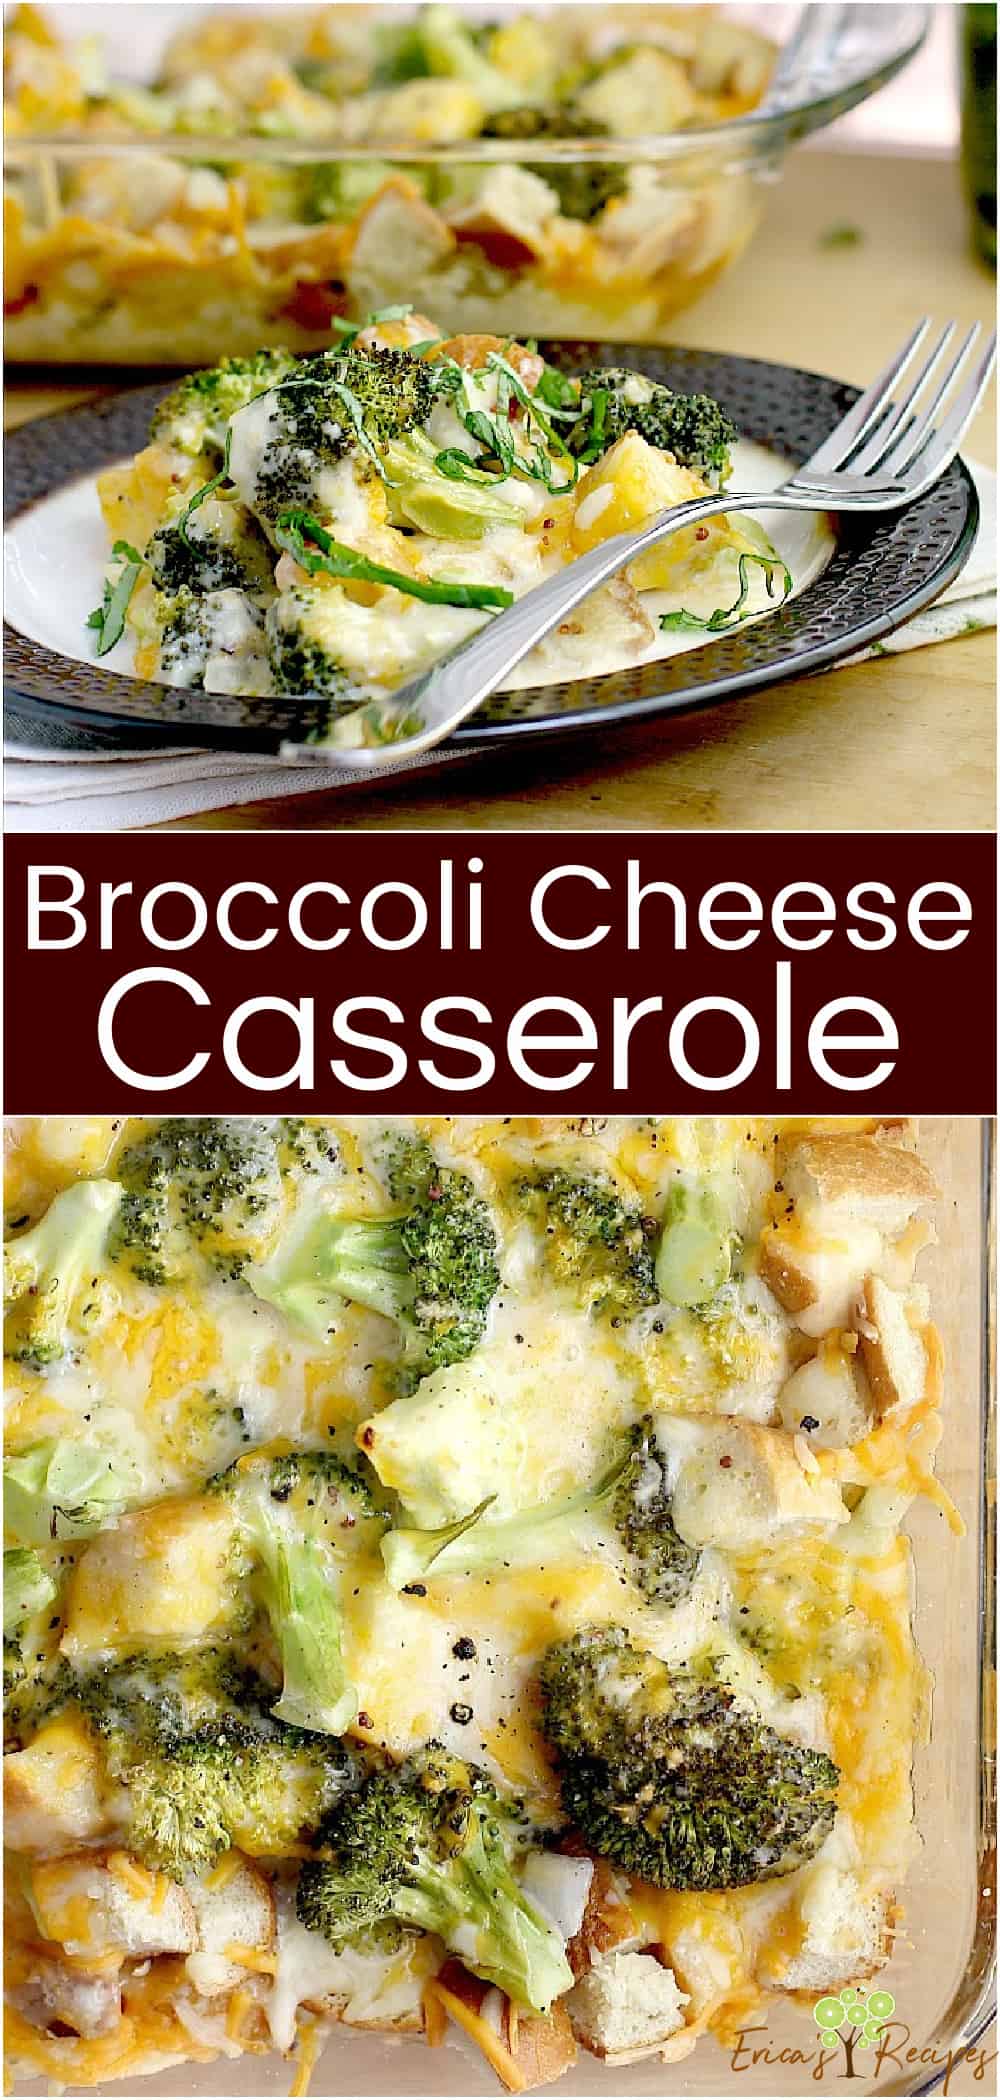 Broccoli Cheese Casserole – Erica's Recipes broccoli casserole with cheese